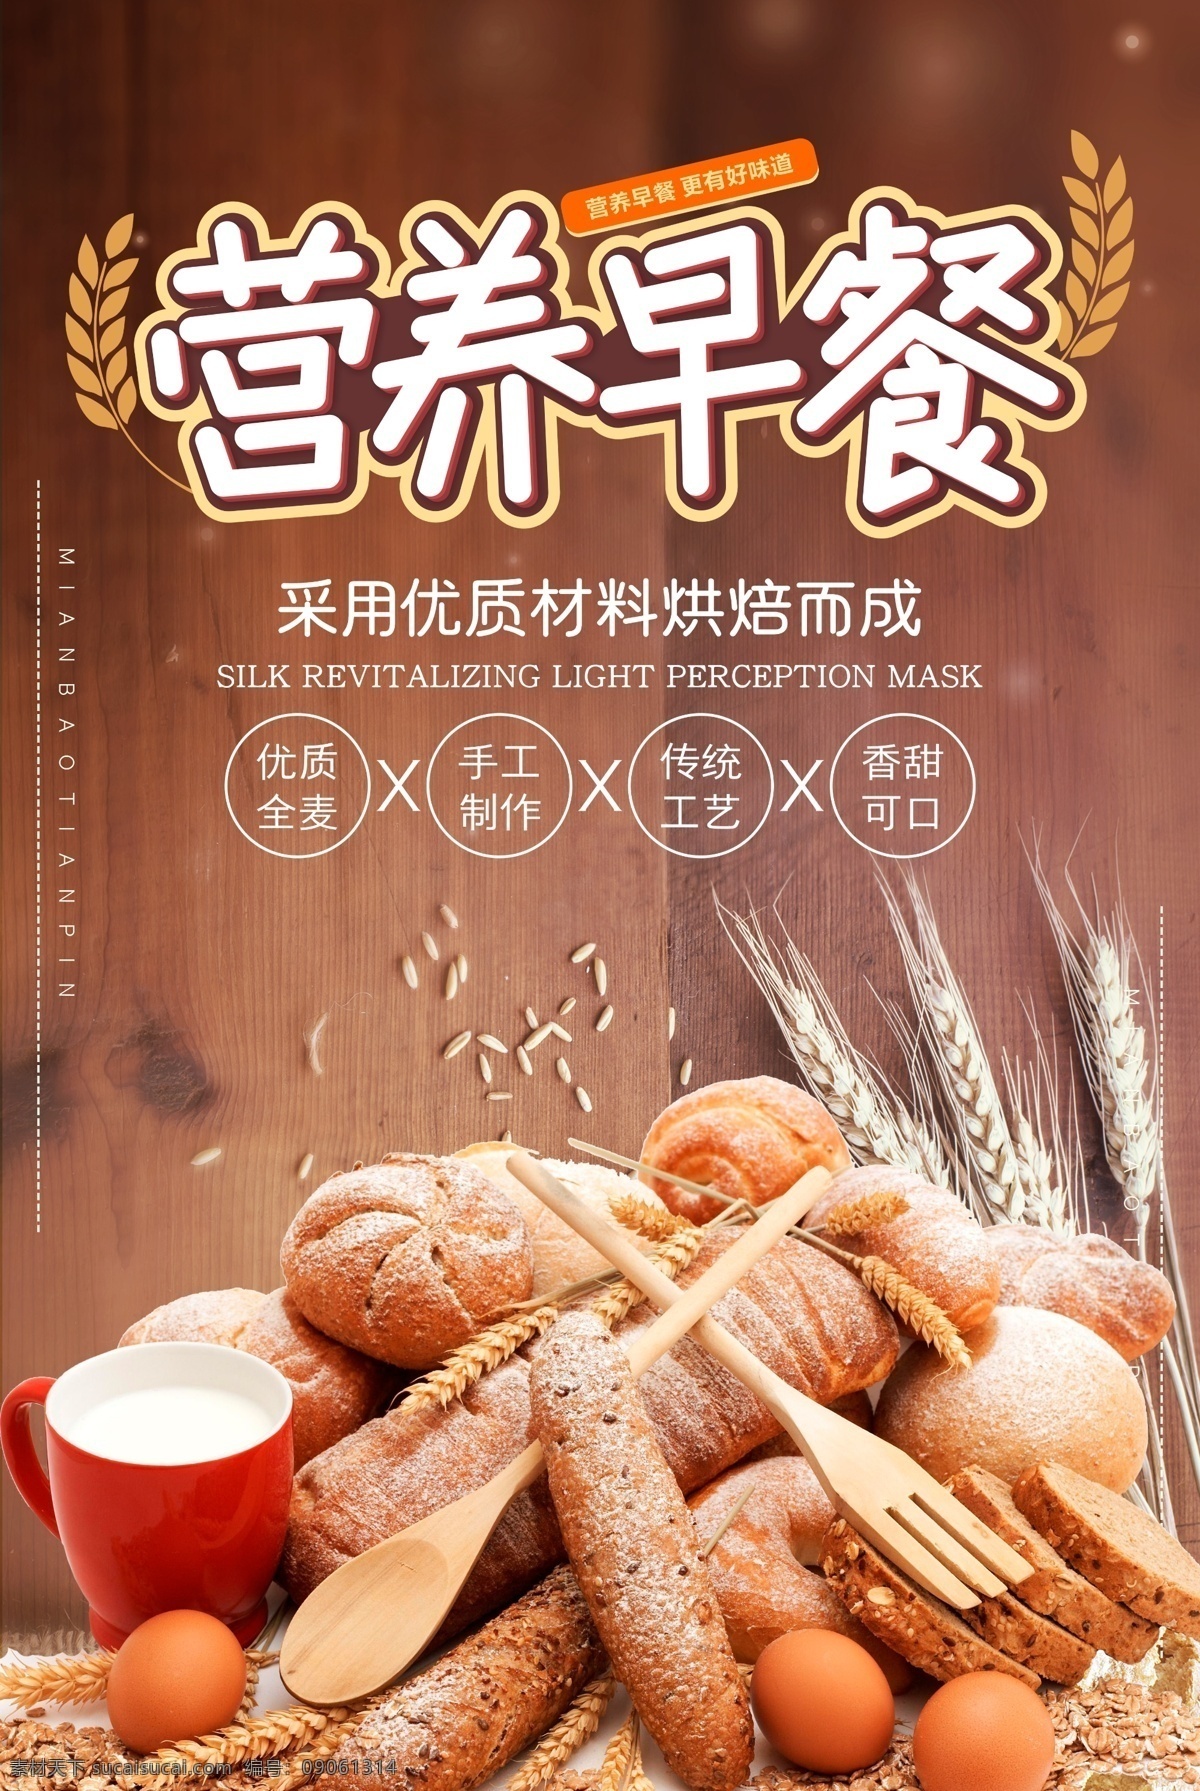 营养早餐 早餐海报 早餐展板 面包 全麦面包 烘焙面包 海报